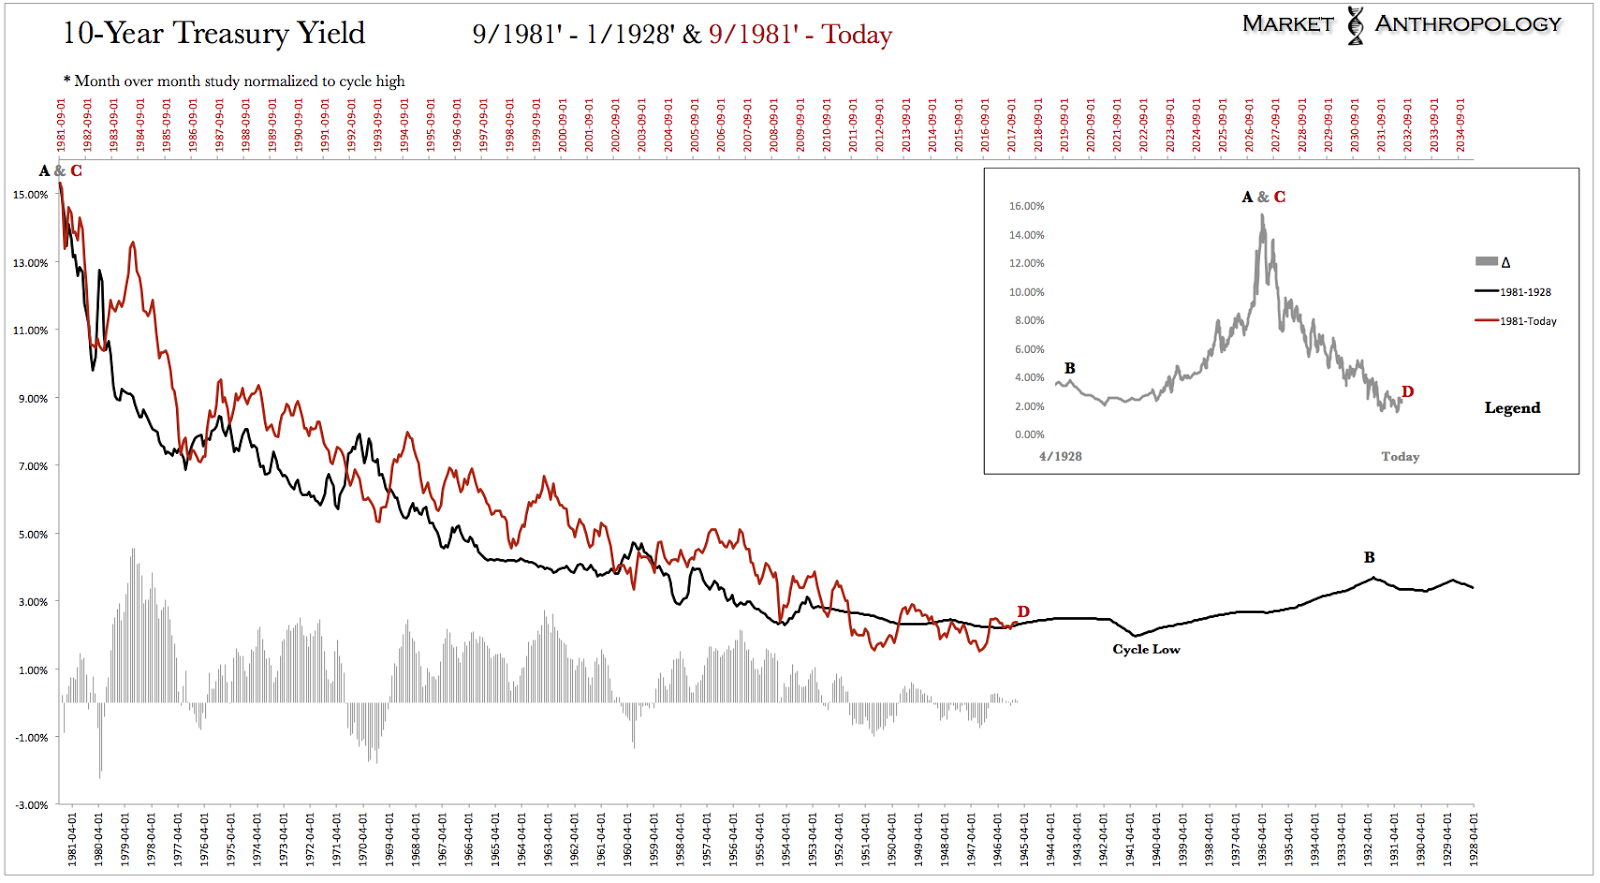 10-Year Treasury Yield 1981-1928 vs 1981-Today